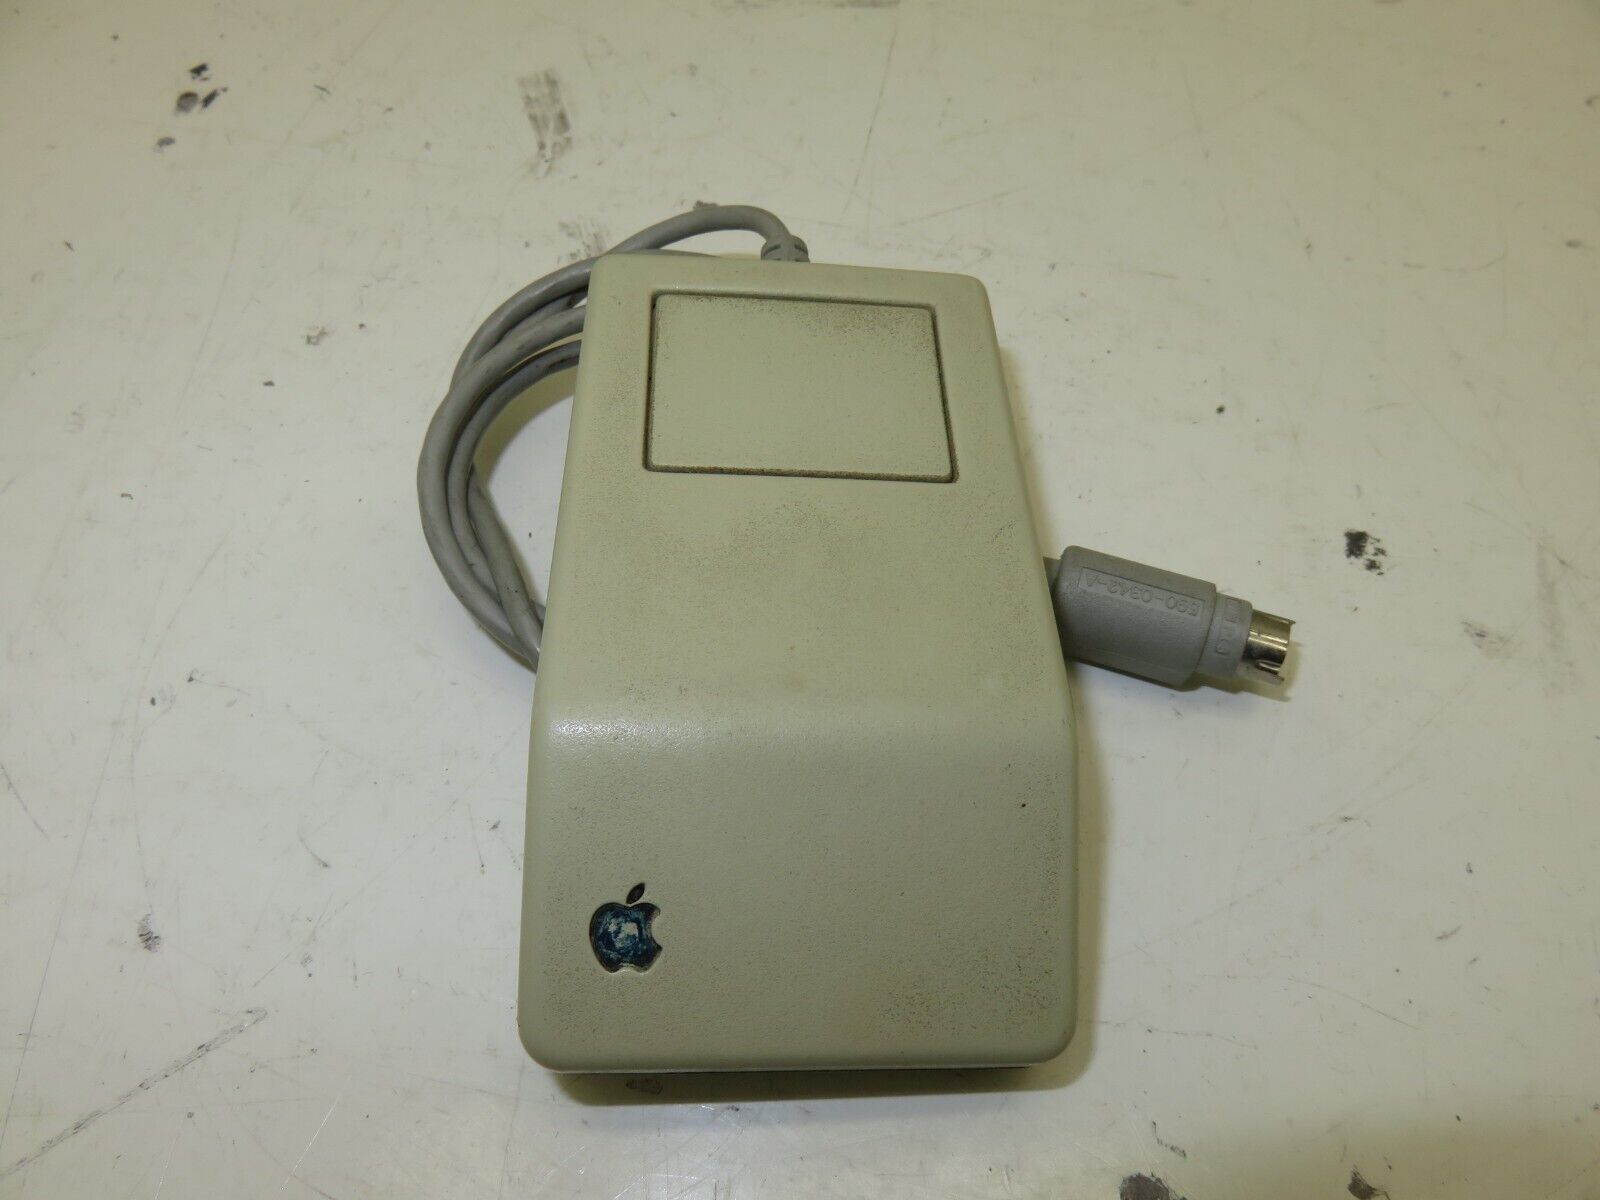 Apple Desktop Bus Mouse G5431